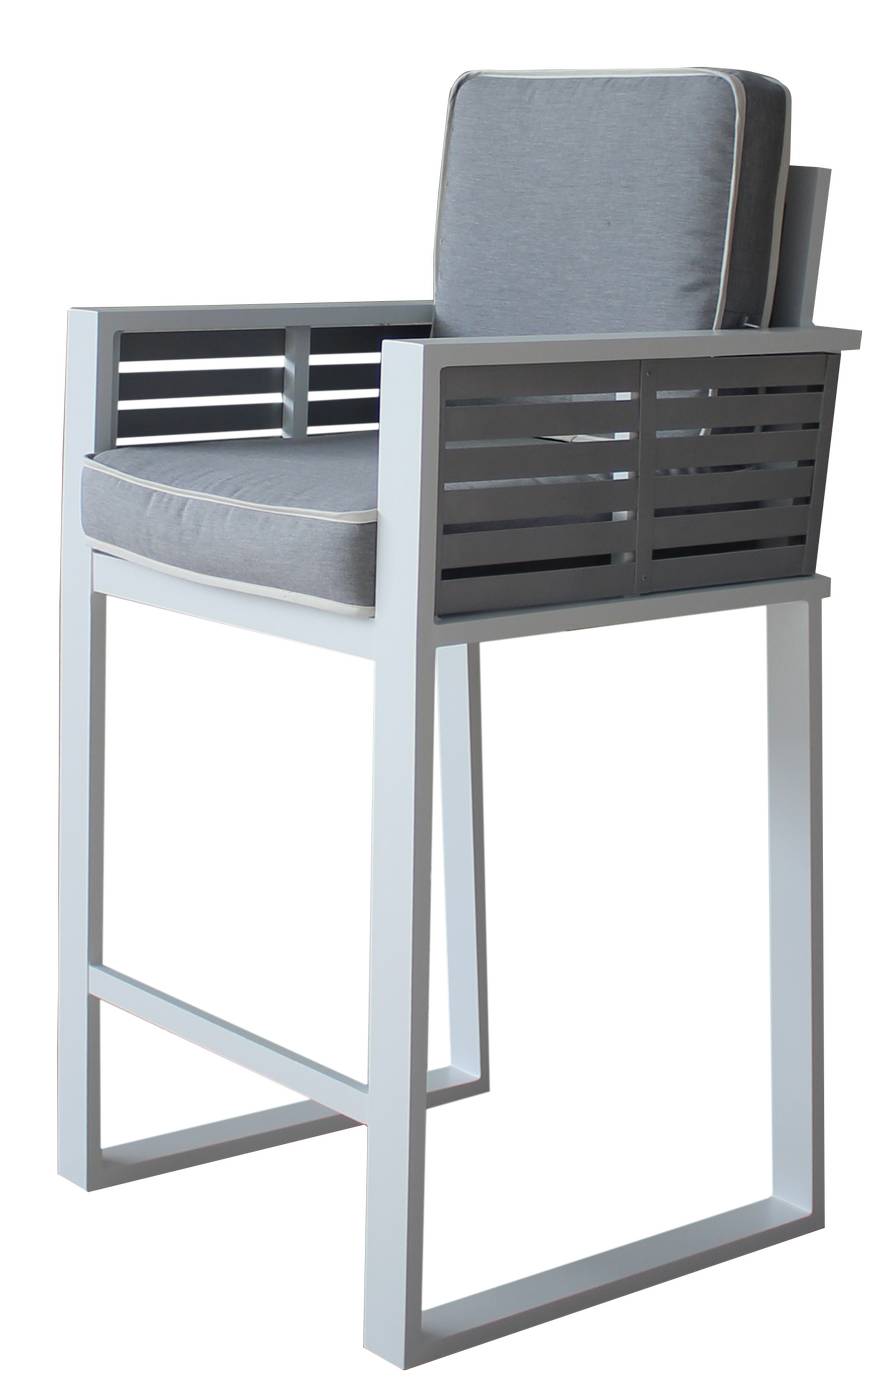 Taburete Bar Bicolor Varna-2 - Exclusivo taburete bar de aluminio bicolor. Con cojines gran confort asiento y respaldo desenfundables.